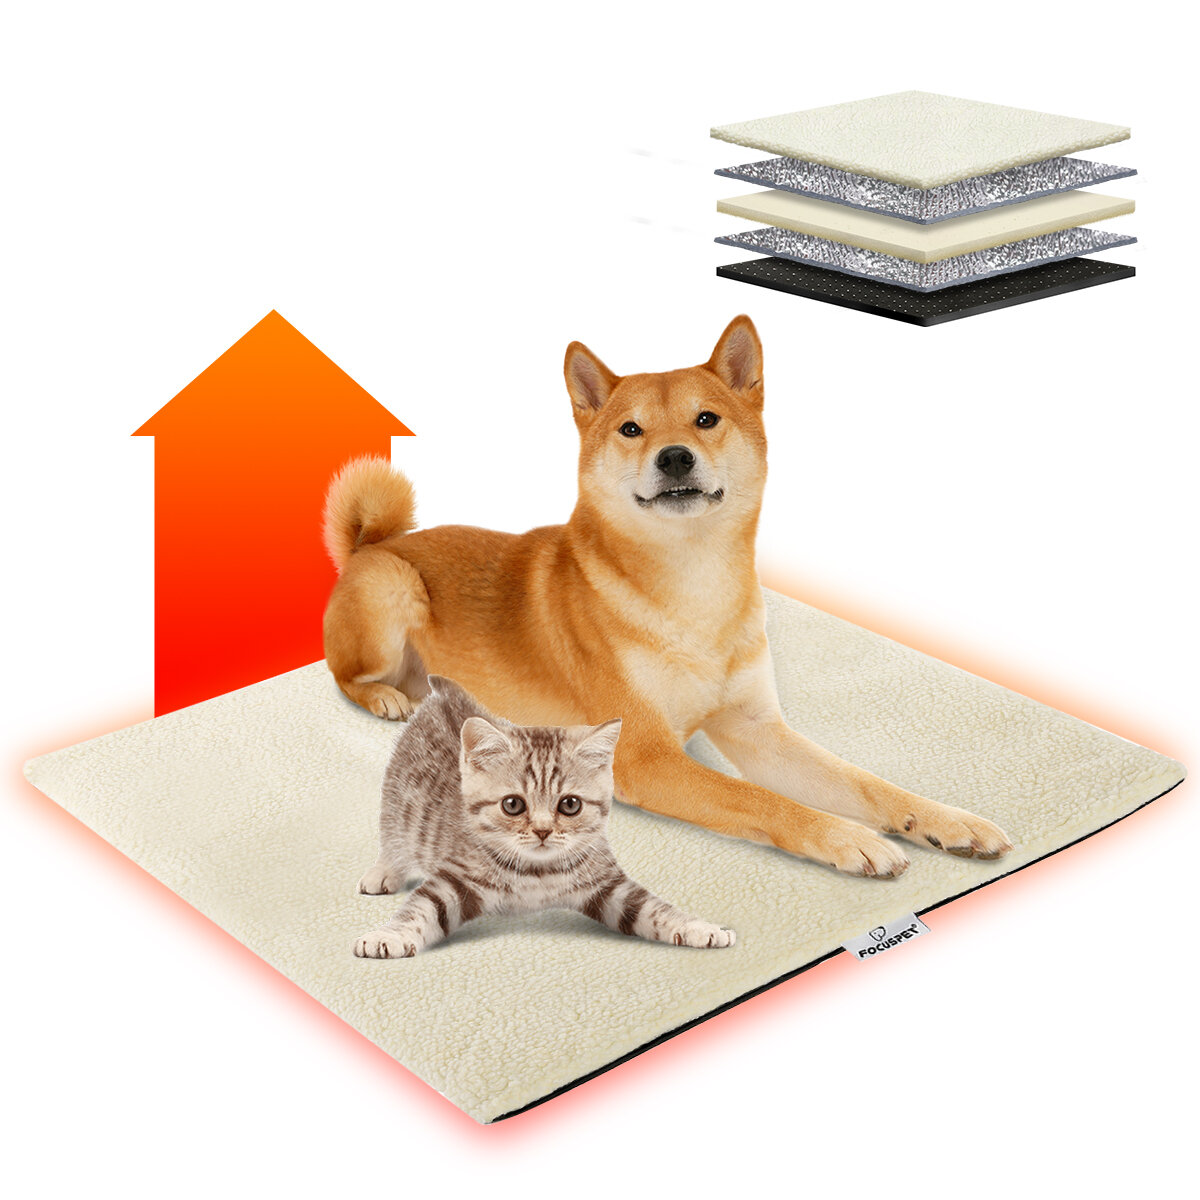 Zelfverwarmende deken Verwarmingsdeken Kat Honden Huisdieren Verwarmingsmat Kat met antislipontwerp